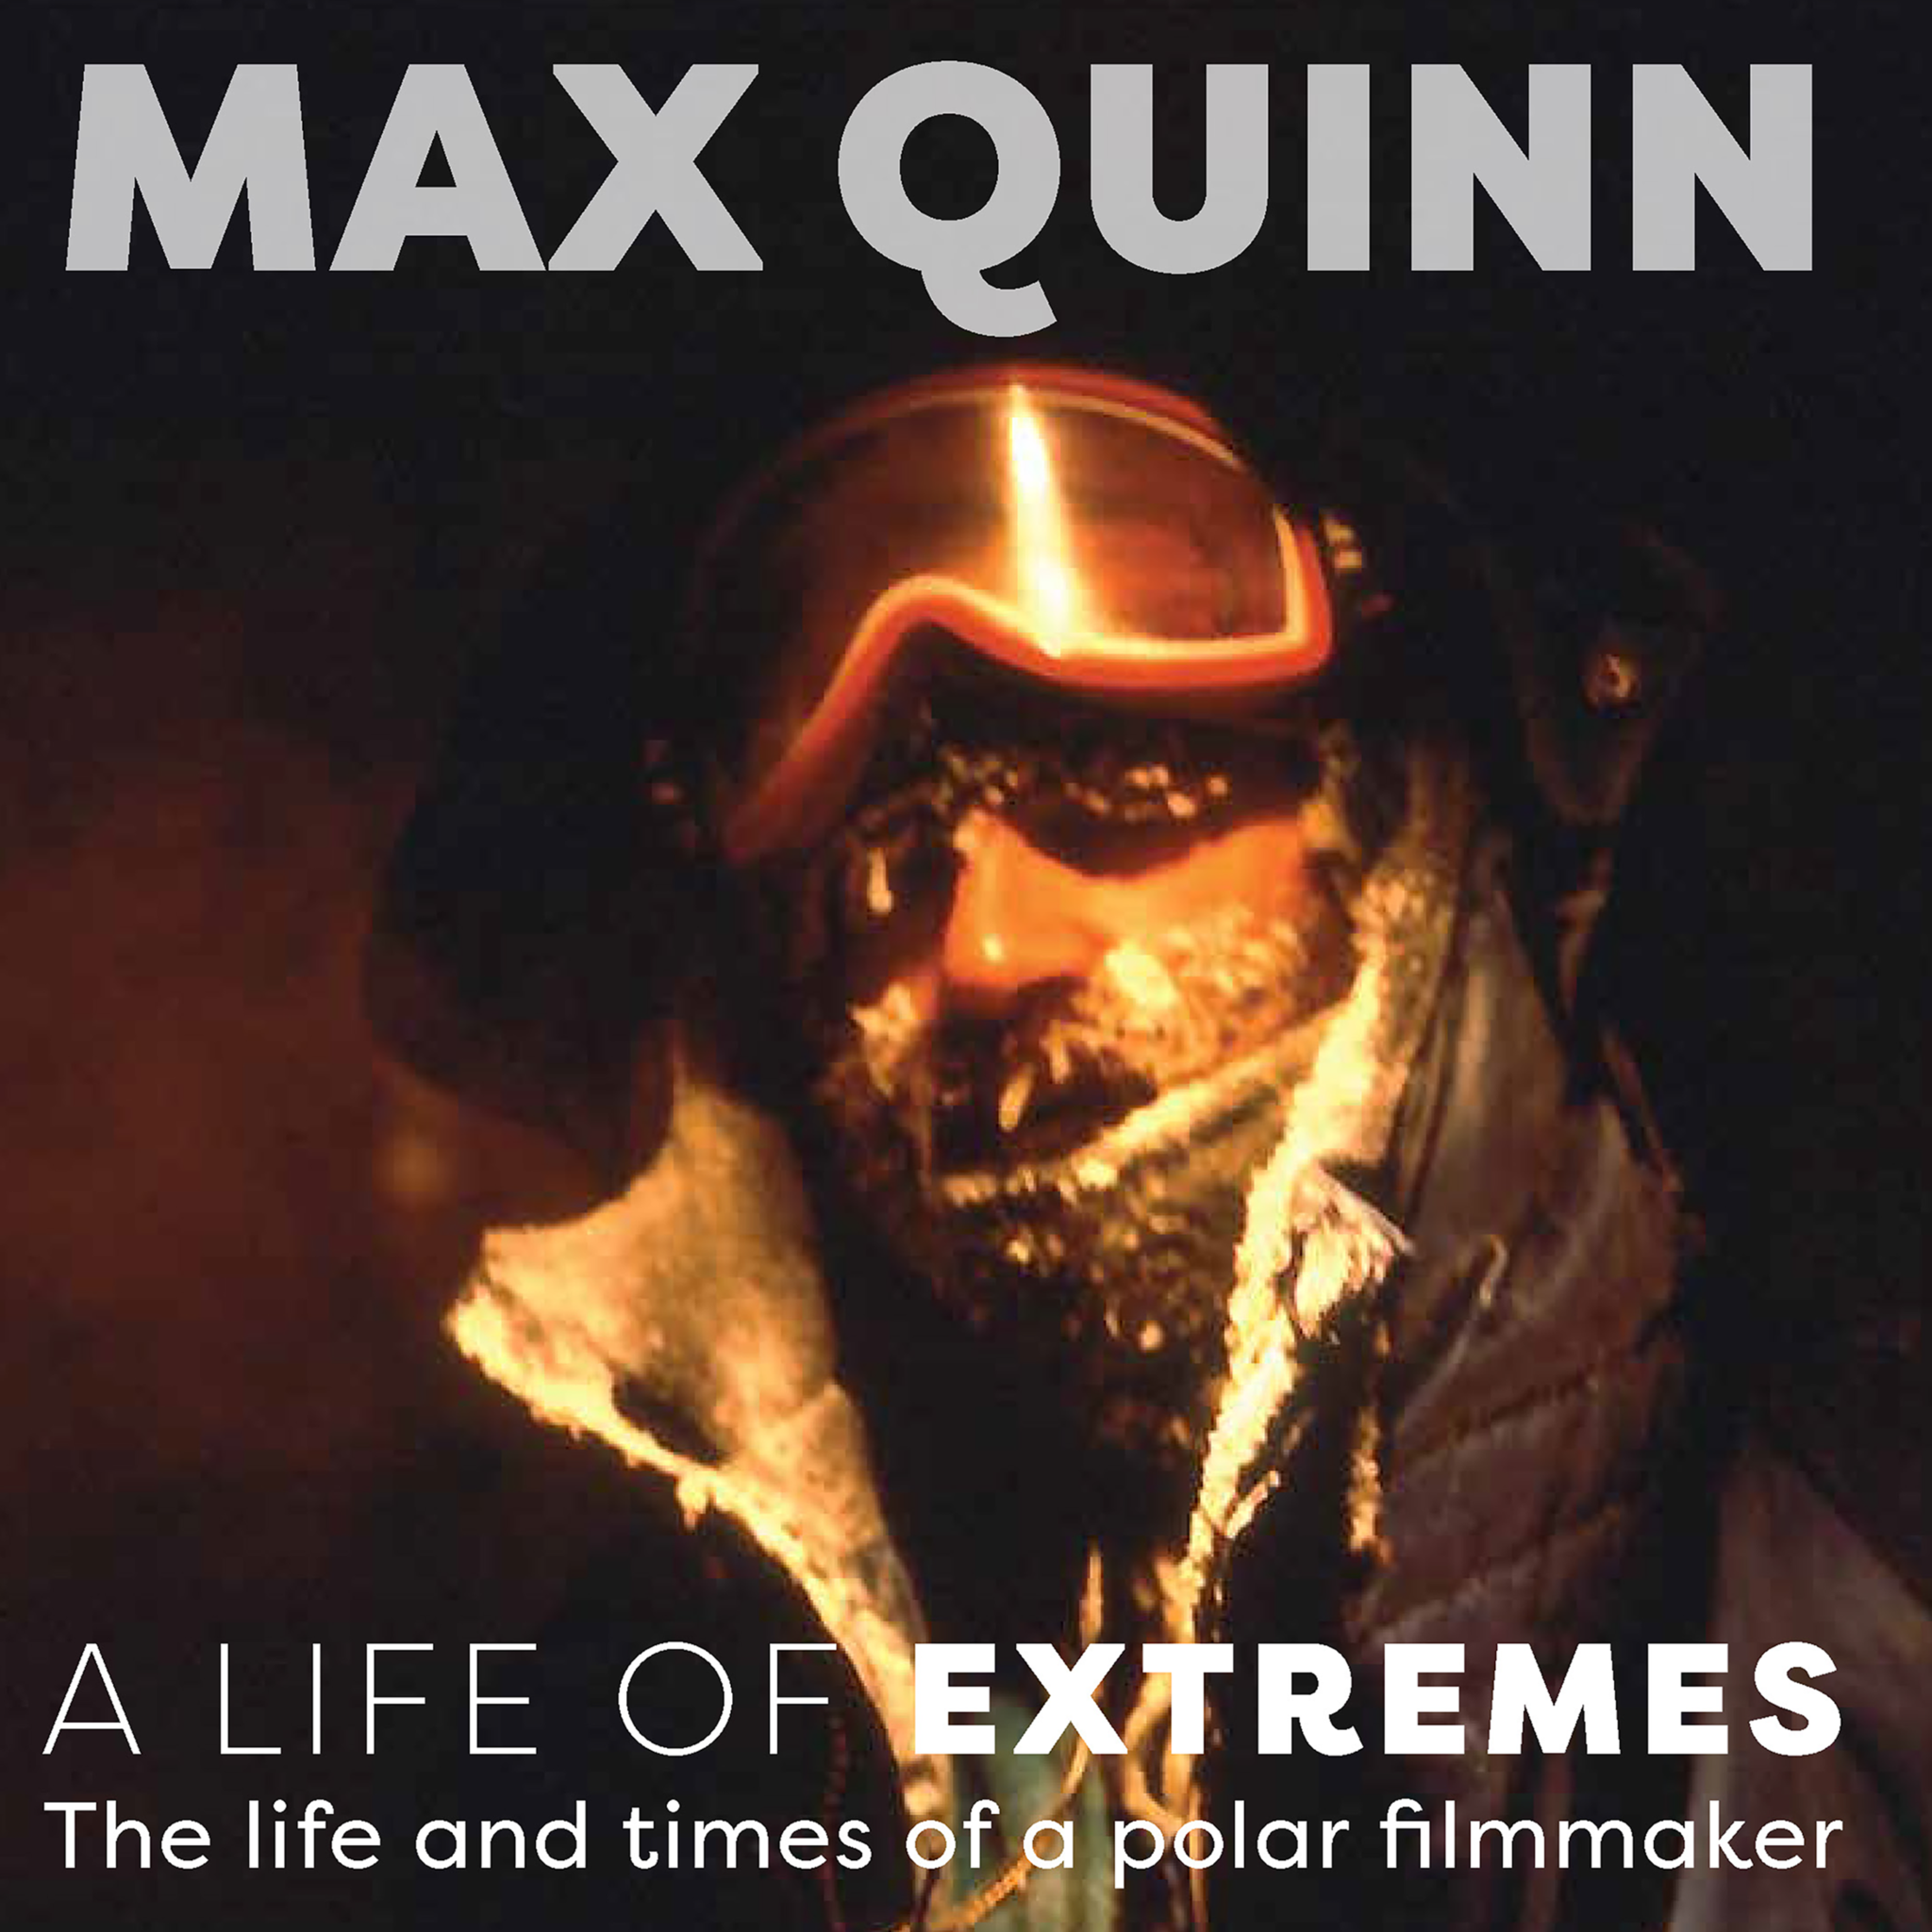 Max Quinn